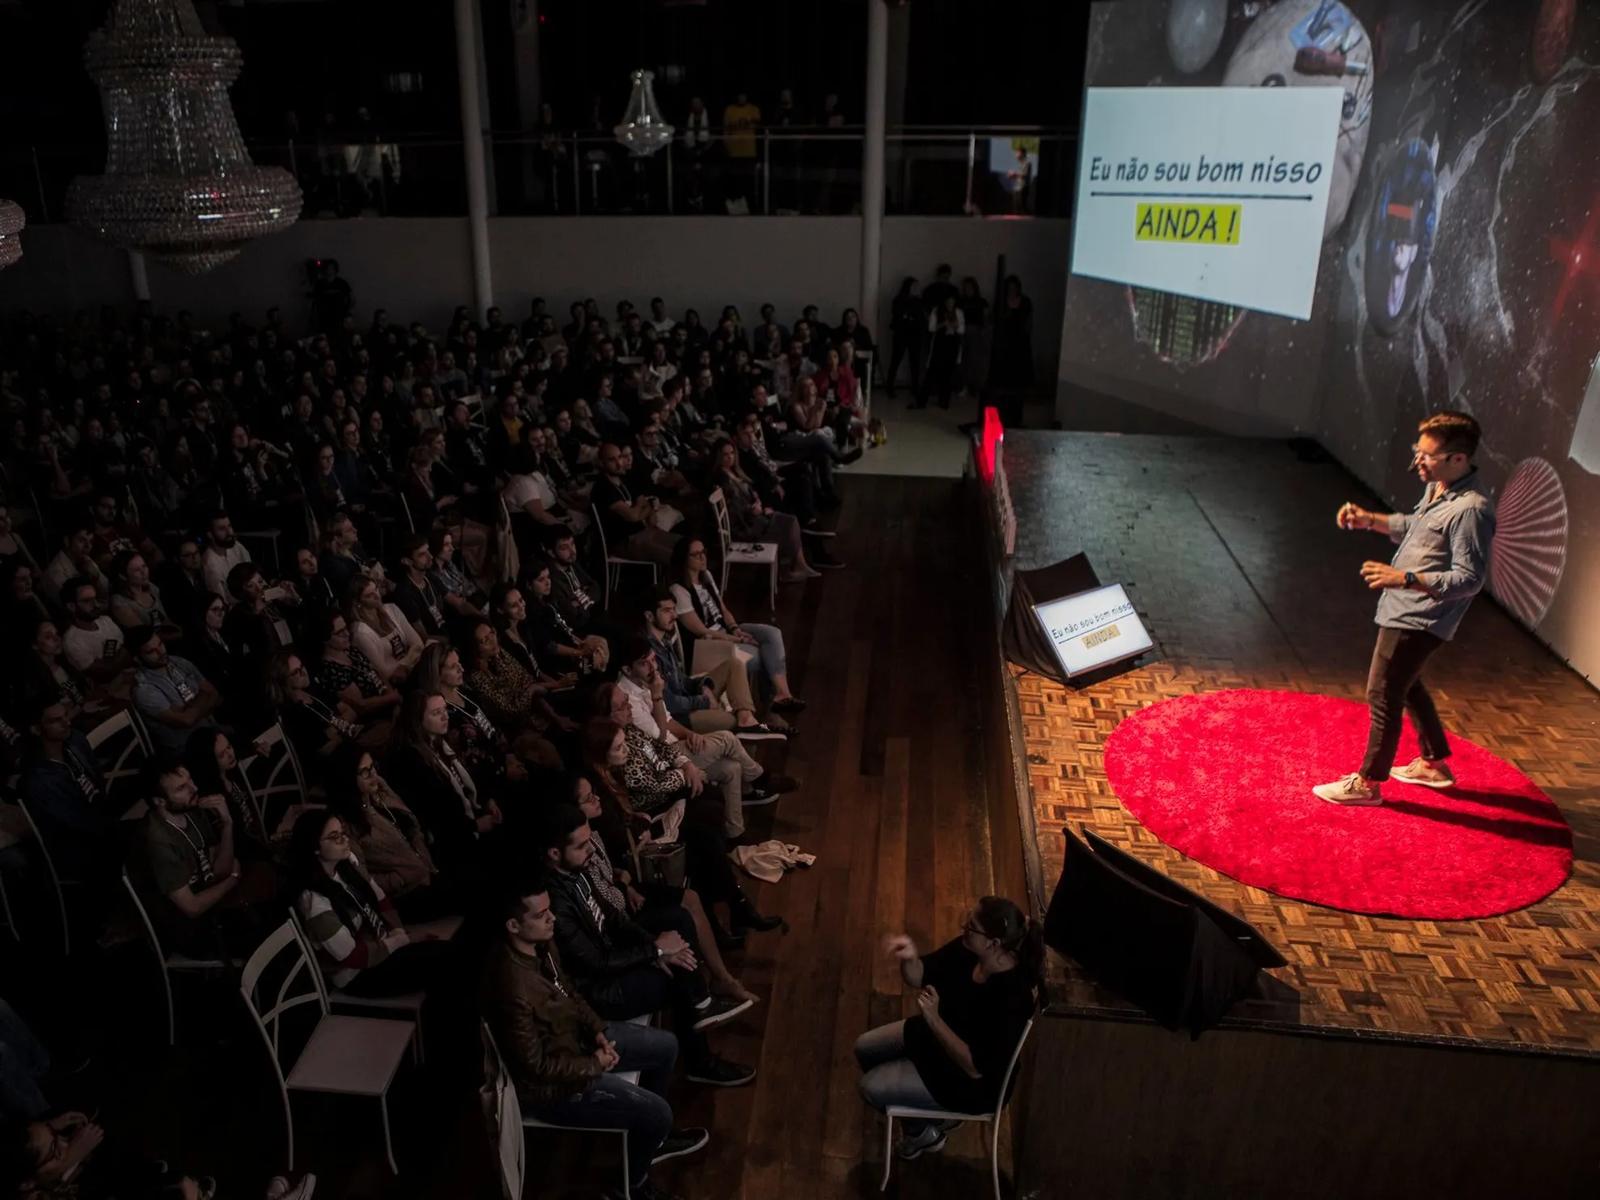 TEDx Talk: The future is antidisciplinary, be a hacker!